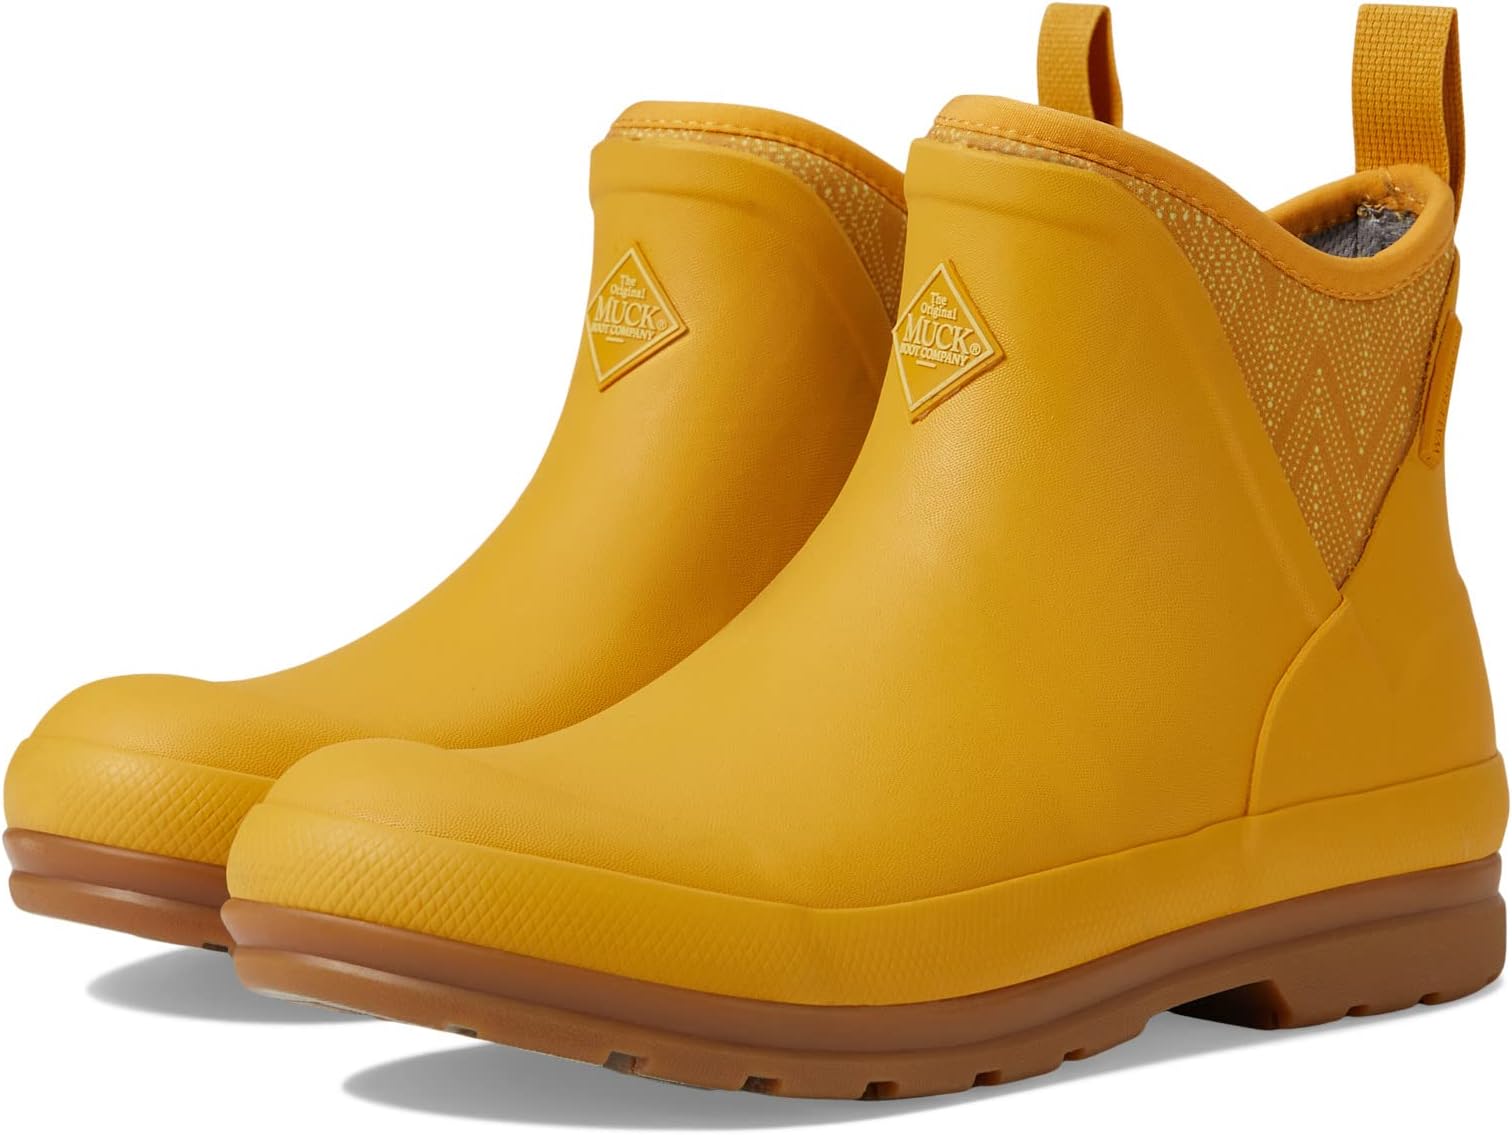 Резиновые сапоги Originals Ankle The Original Muck Boot Company, желтый стакан чашка mycup´n lid original musty yellow